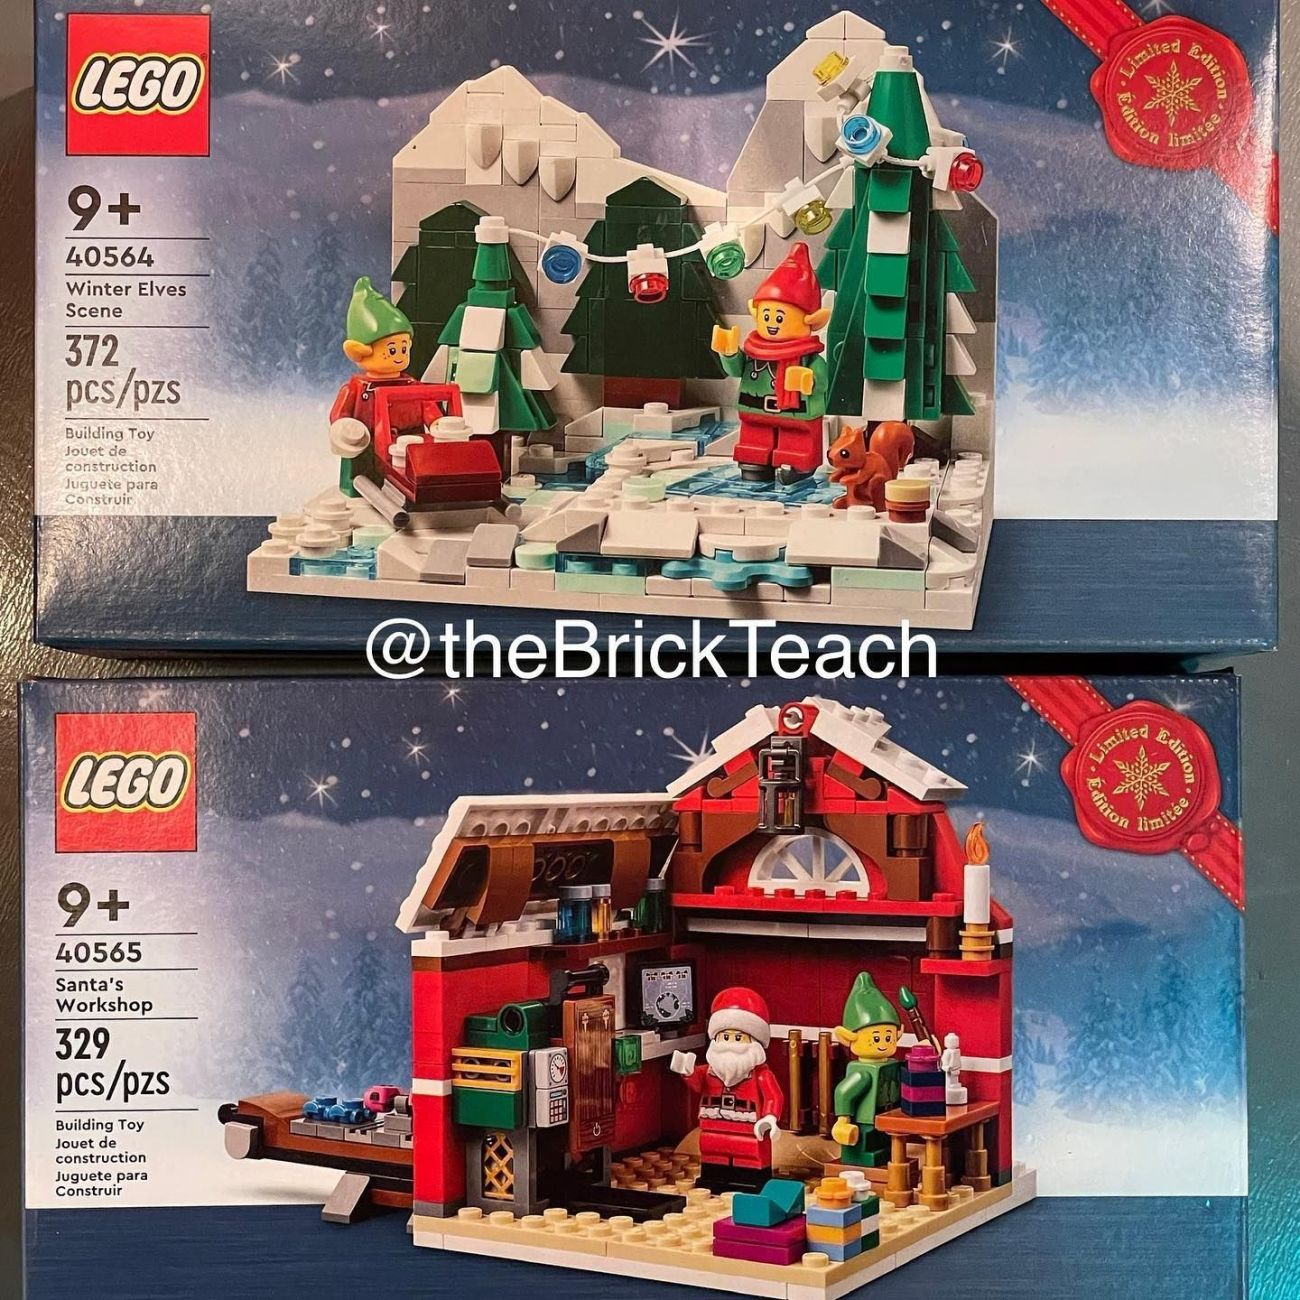 LEGO 40564 Winter Elves Scene & 40565 Santa's Workshop: Erste Bilder der GWPs zu Weihnachten 2022